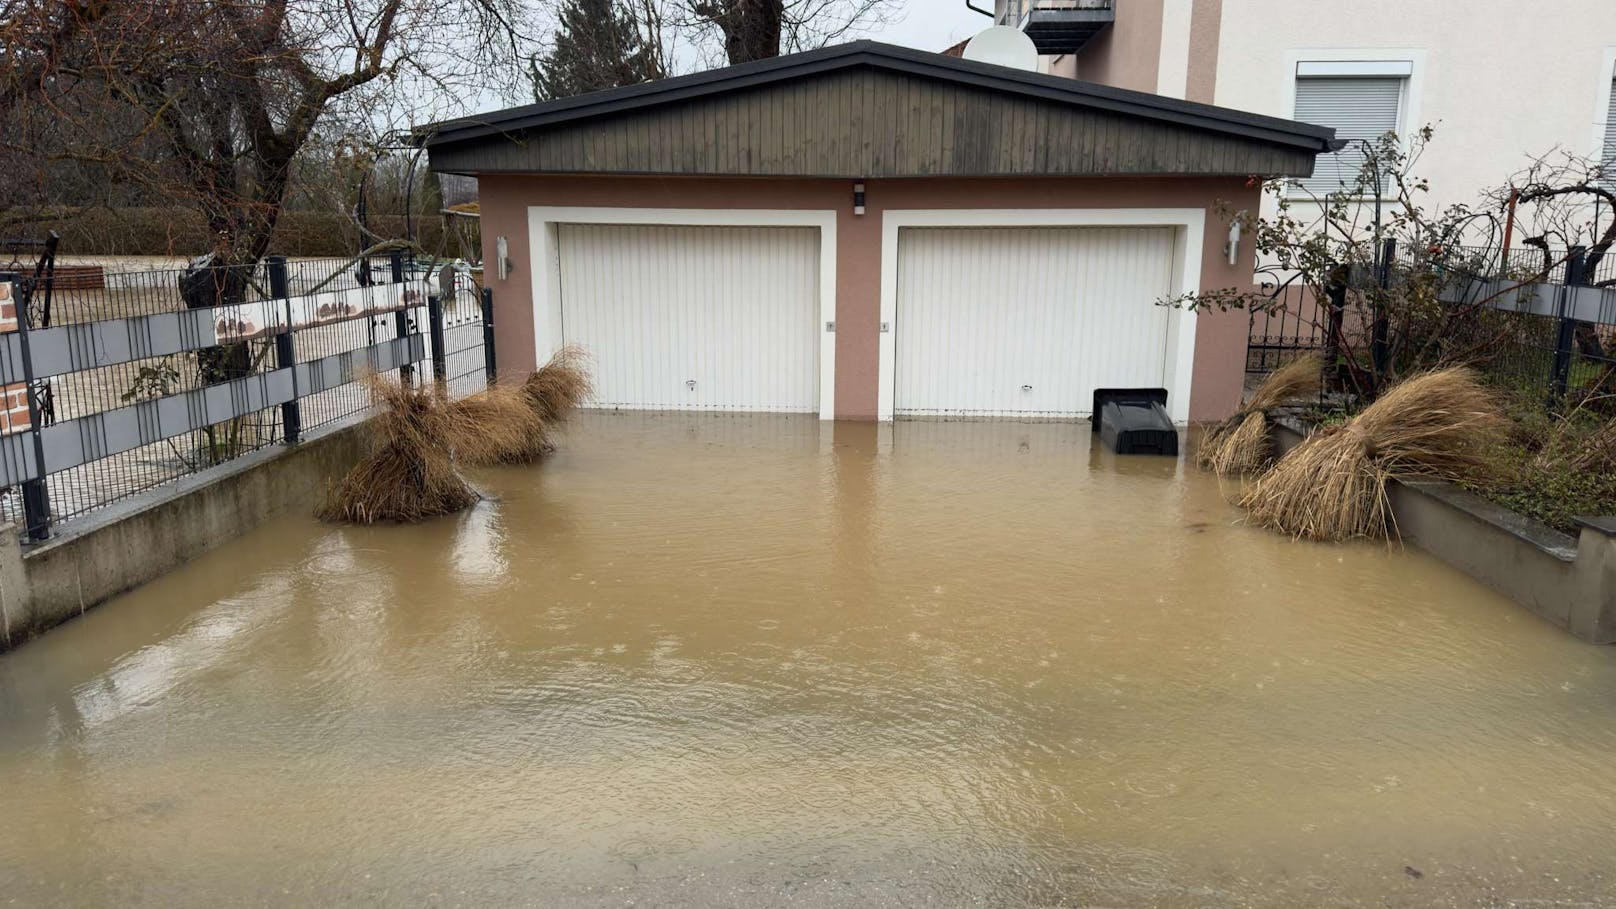 Überschwemmungen und Hochwasser beschäftigen die Feuerwehren im Bezirk Amstetten. In Blindenmarkt musste eine Landesstrasse gesperrt werden wegen Überflutungen. Bei Ybbs sind zahlreiche Keller unter Wasser. 